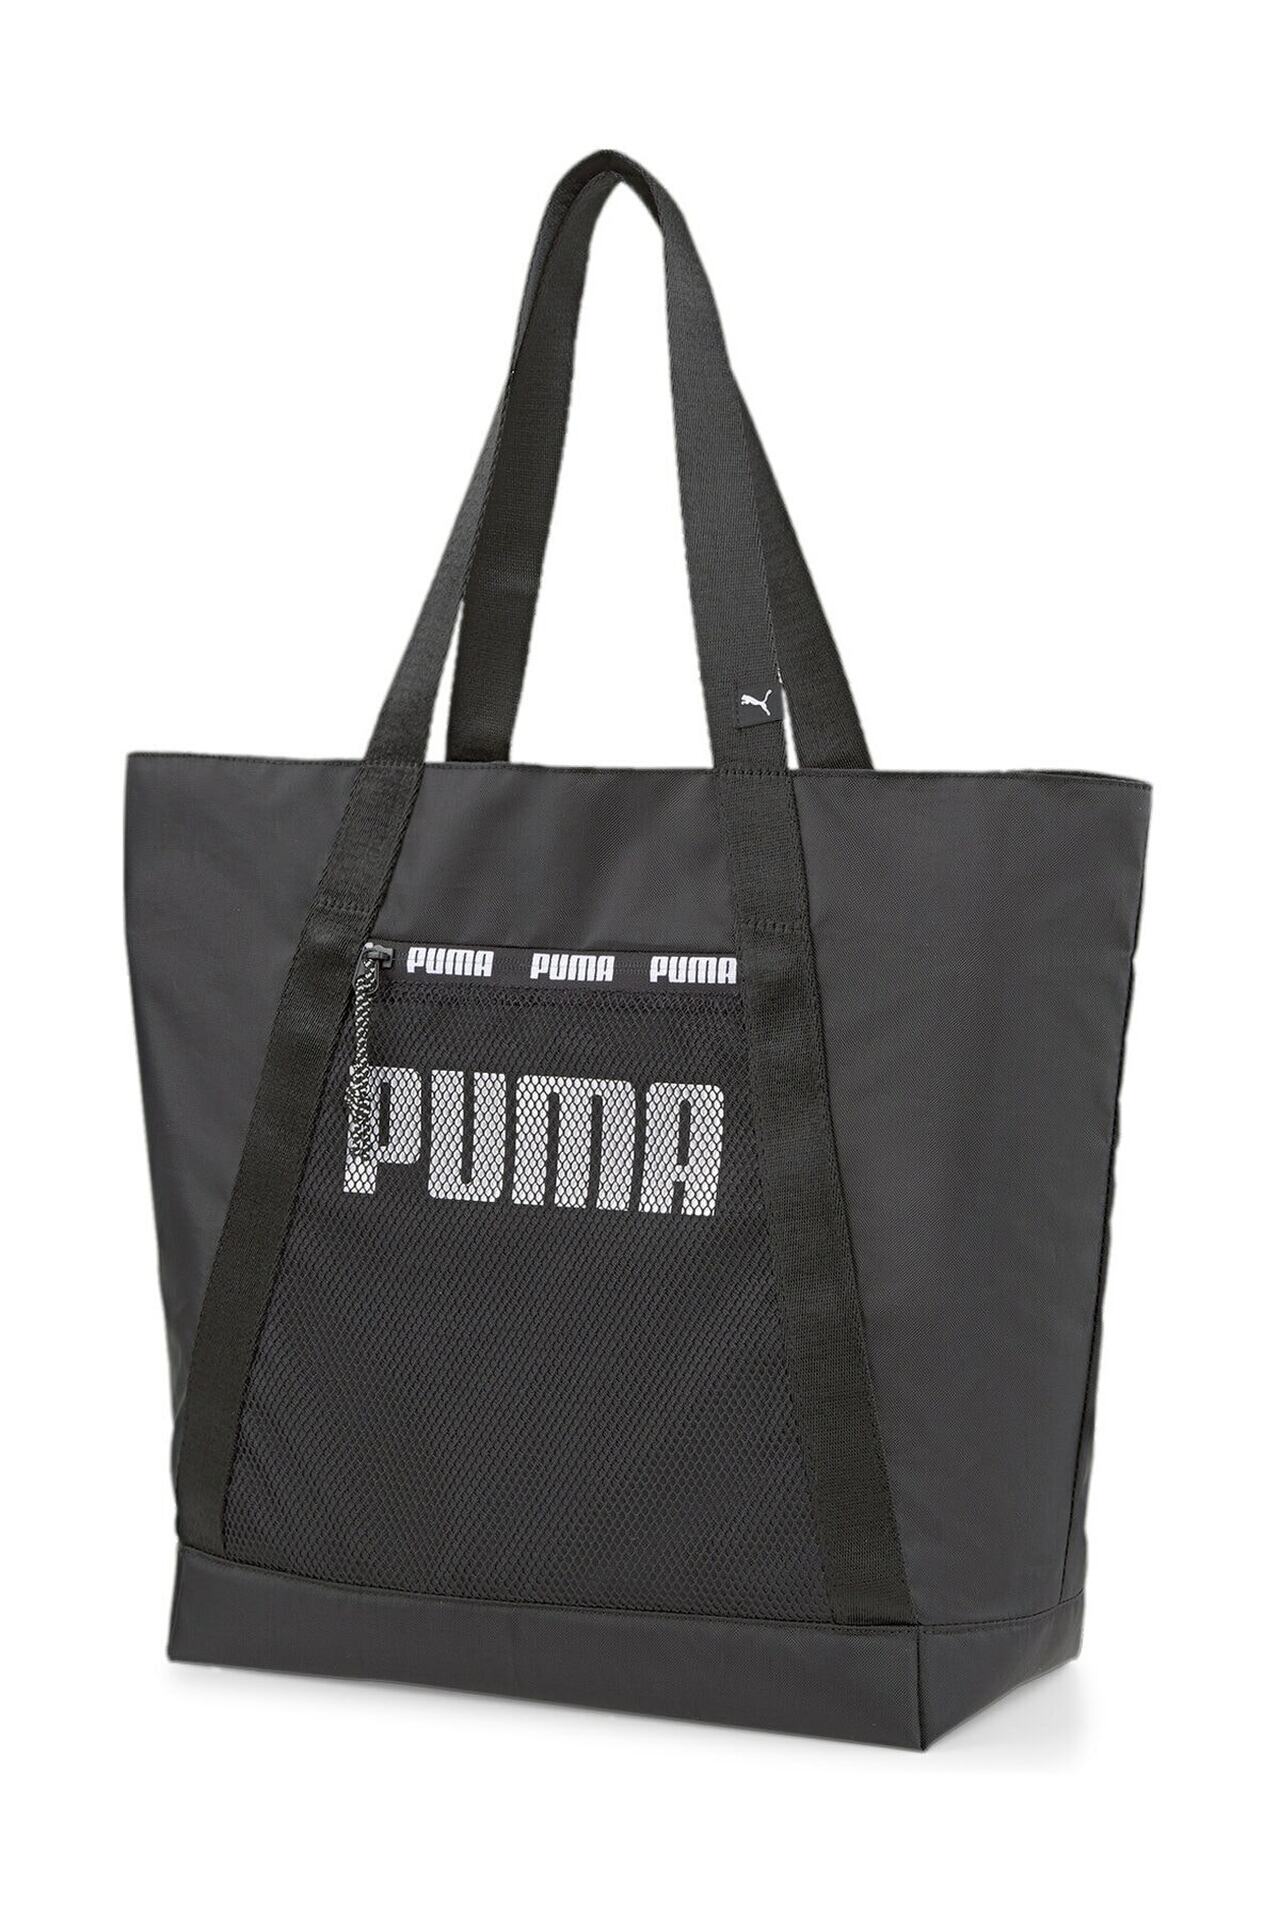 Puma 078729 01 Core Base Veľká taška Shopper